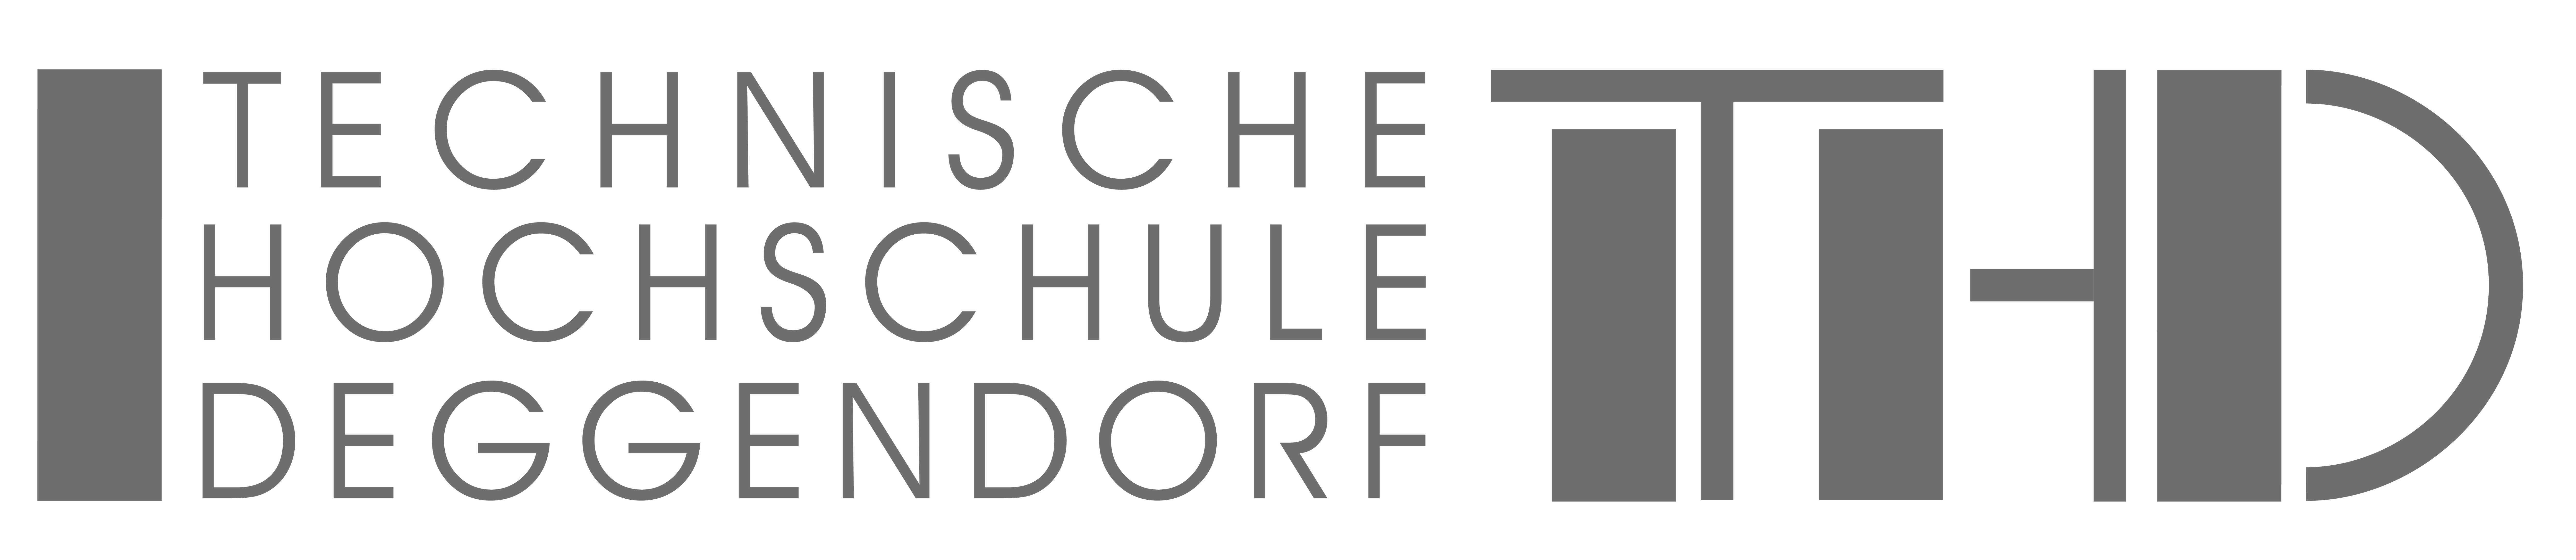 Logo der Hochschule Technische Hochschule Deggendorf